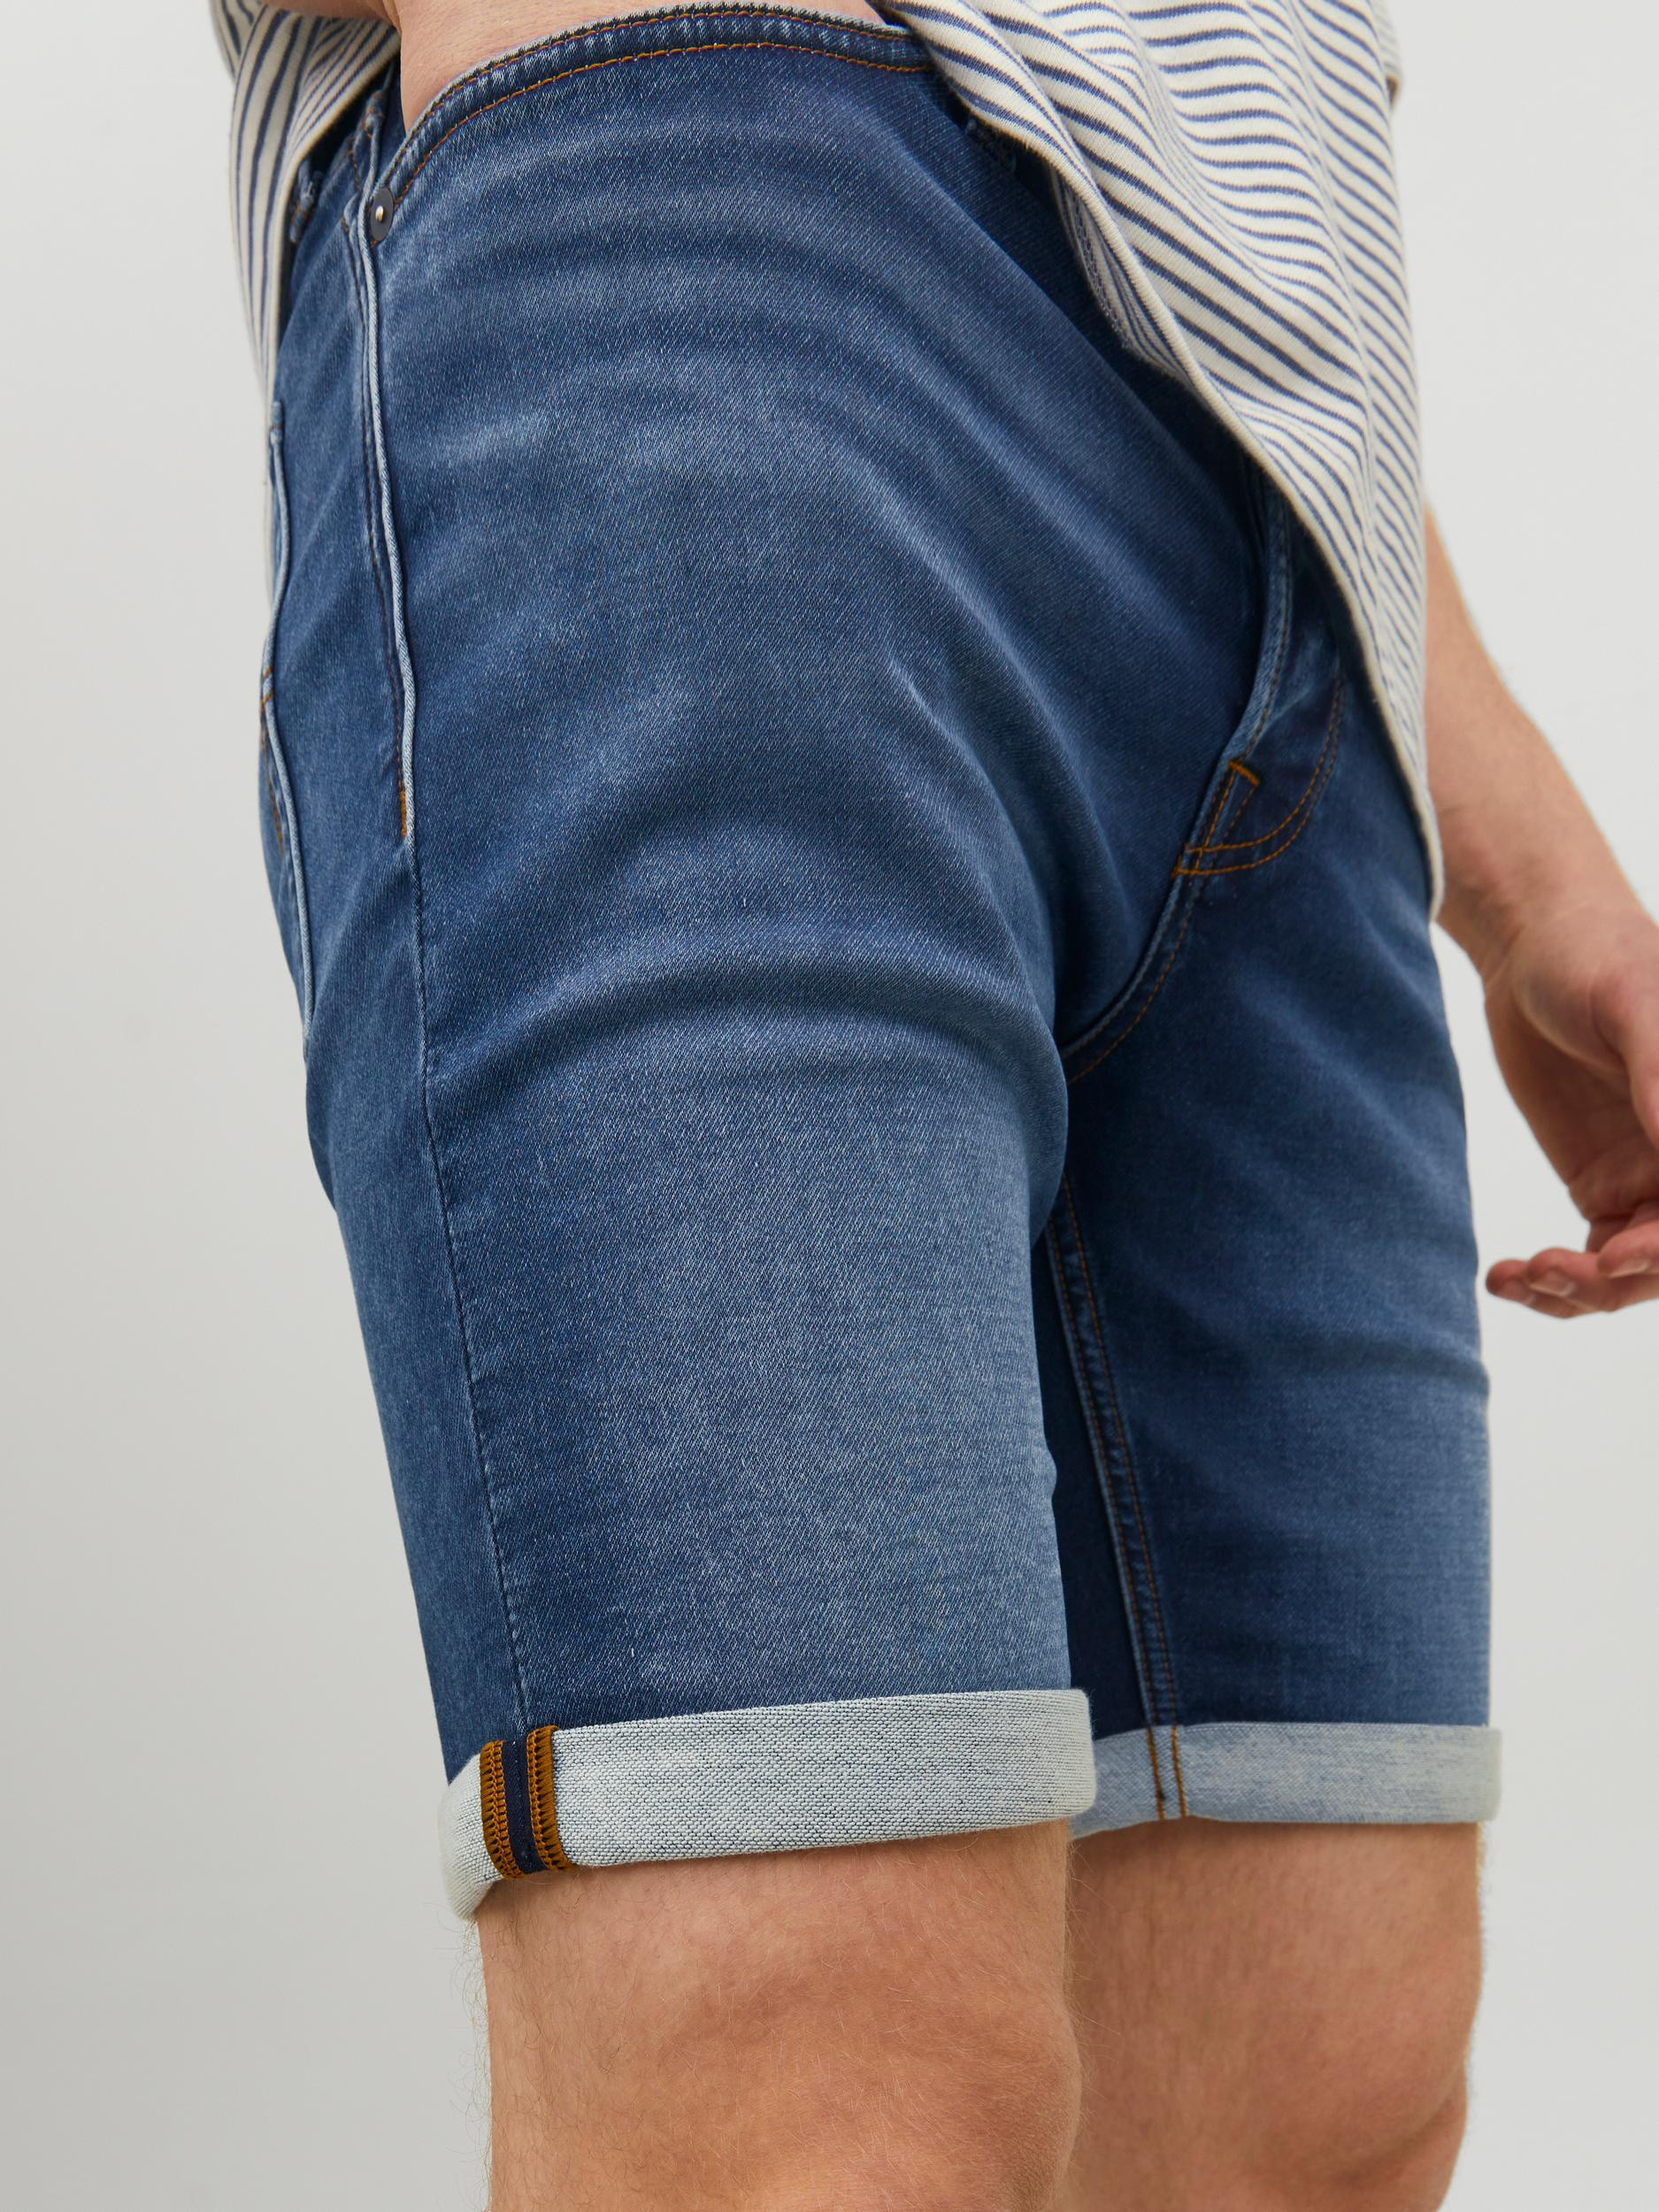 Jack & Jones - Five-pocket jeans bermuda, Denim, large image number 2